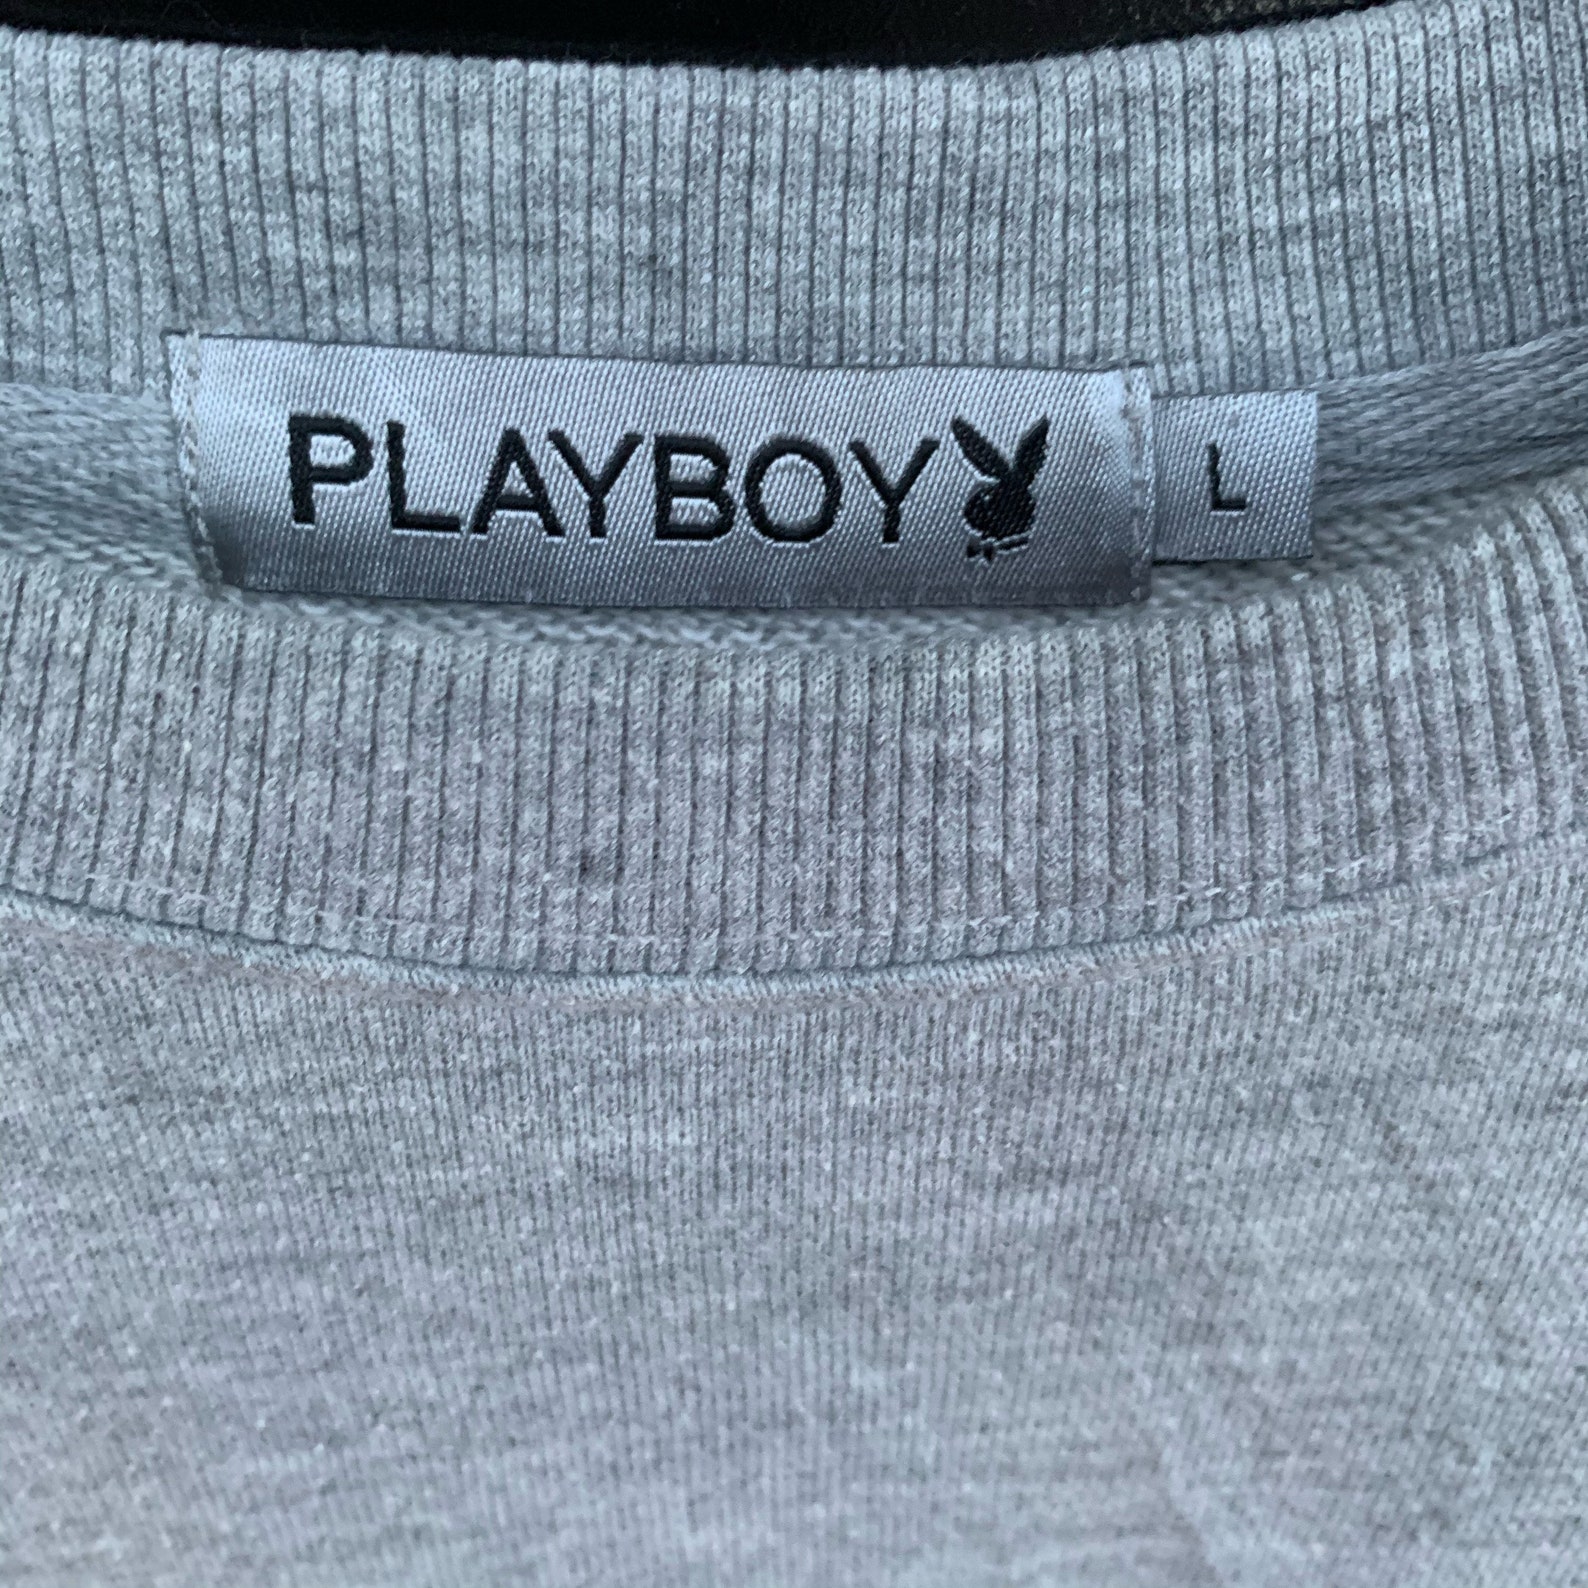 PICK Vintage Playboy Crewneck Jumper Playboy Sweater Big | Etsy